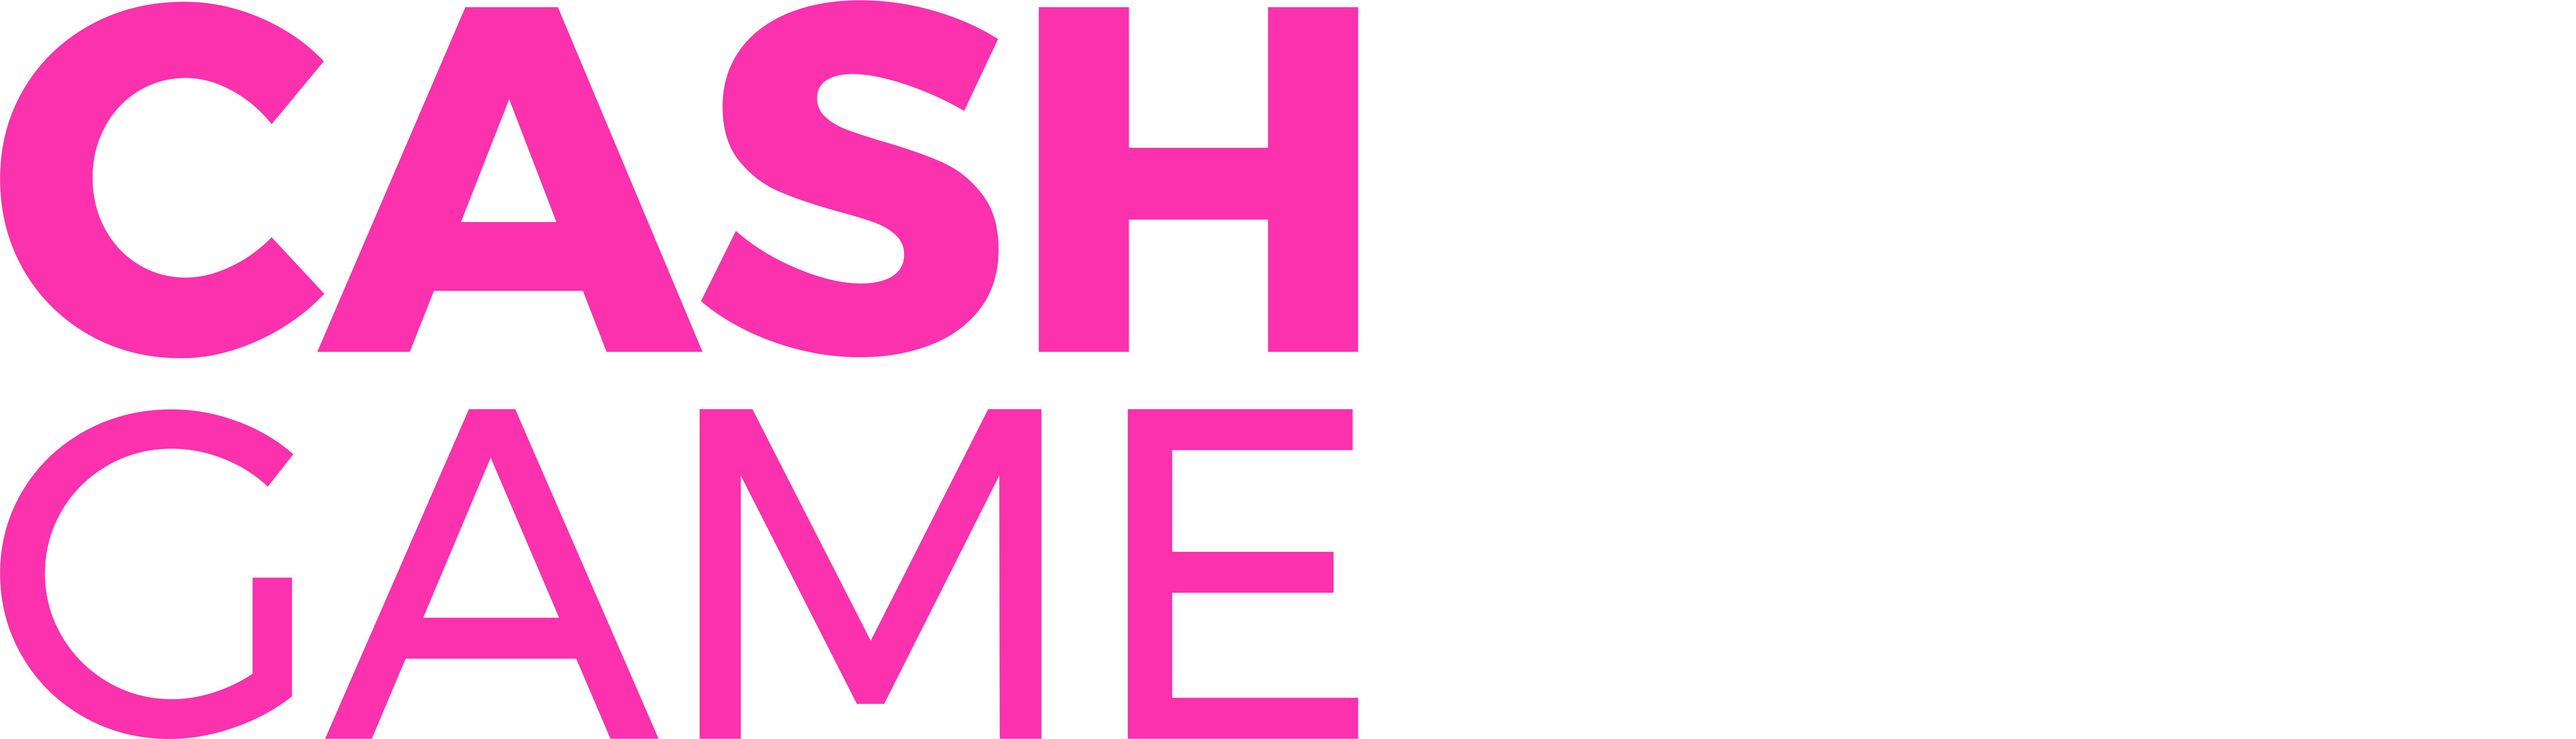 cashgame88 logo